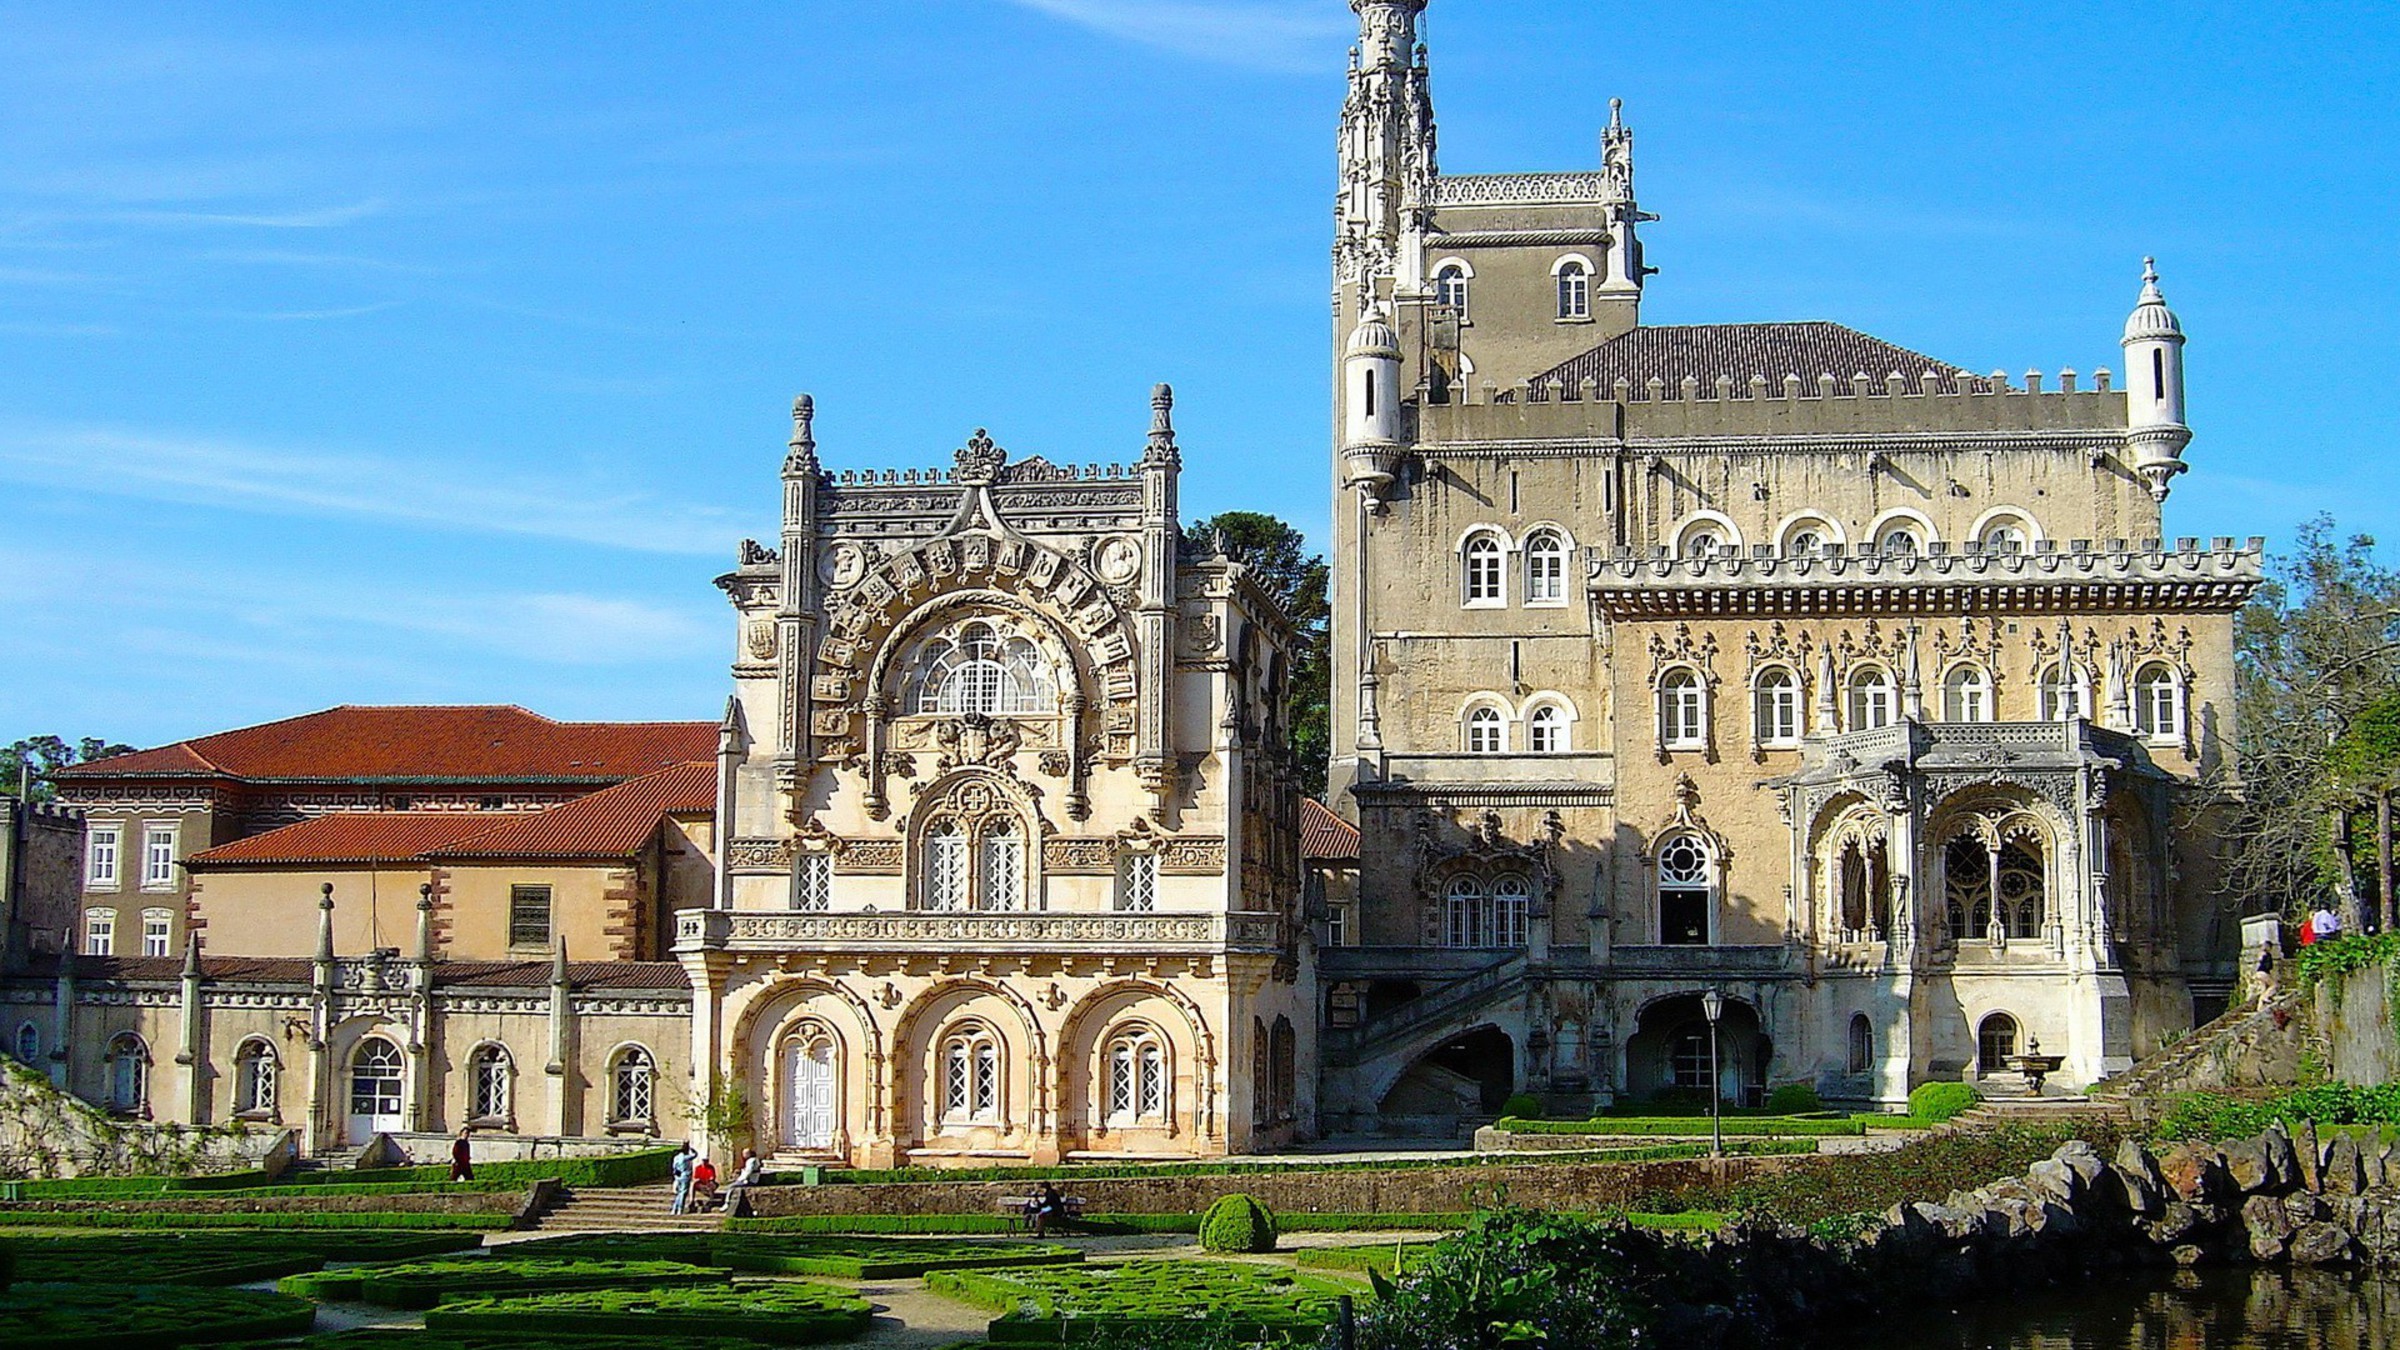 تور پرتغال با پرواز مستقیم و اقامت 7 روزه در بهترین هتل های کشور پرتغال